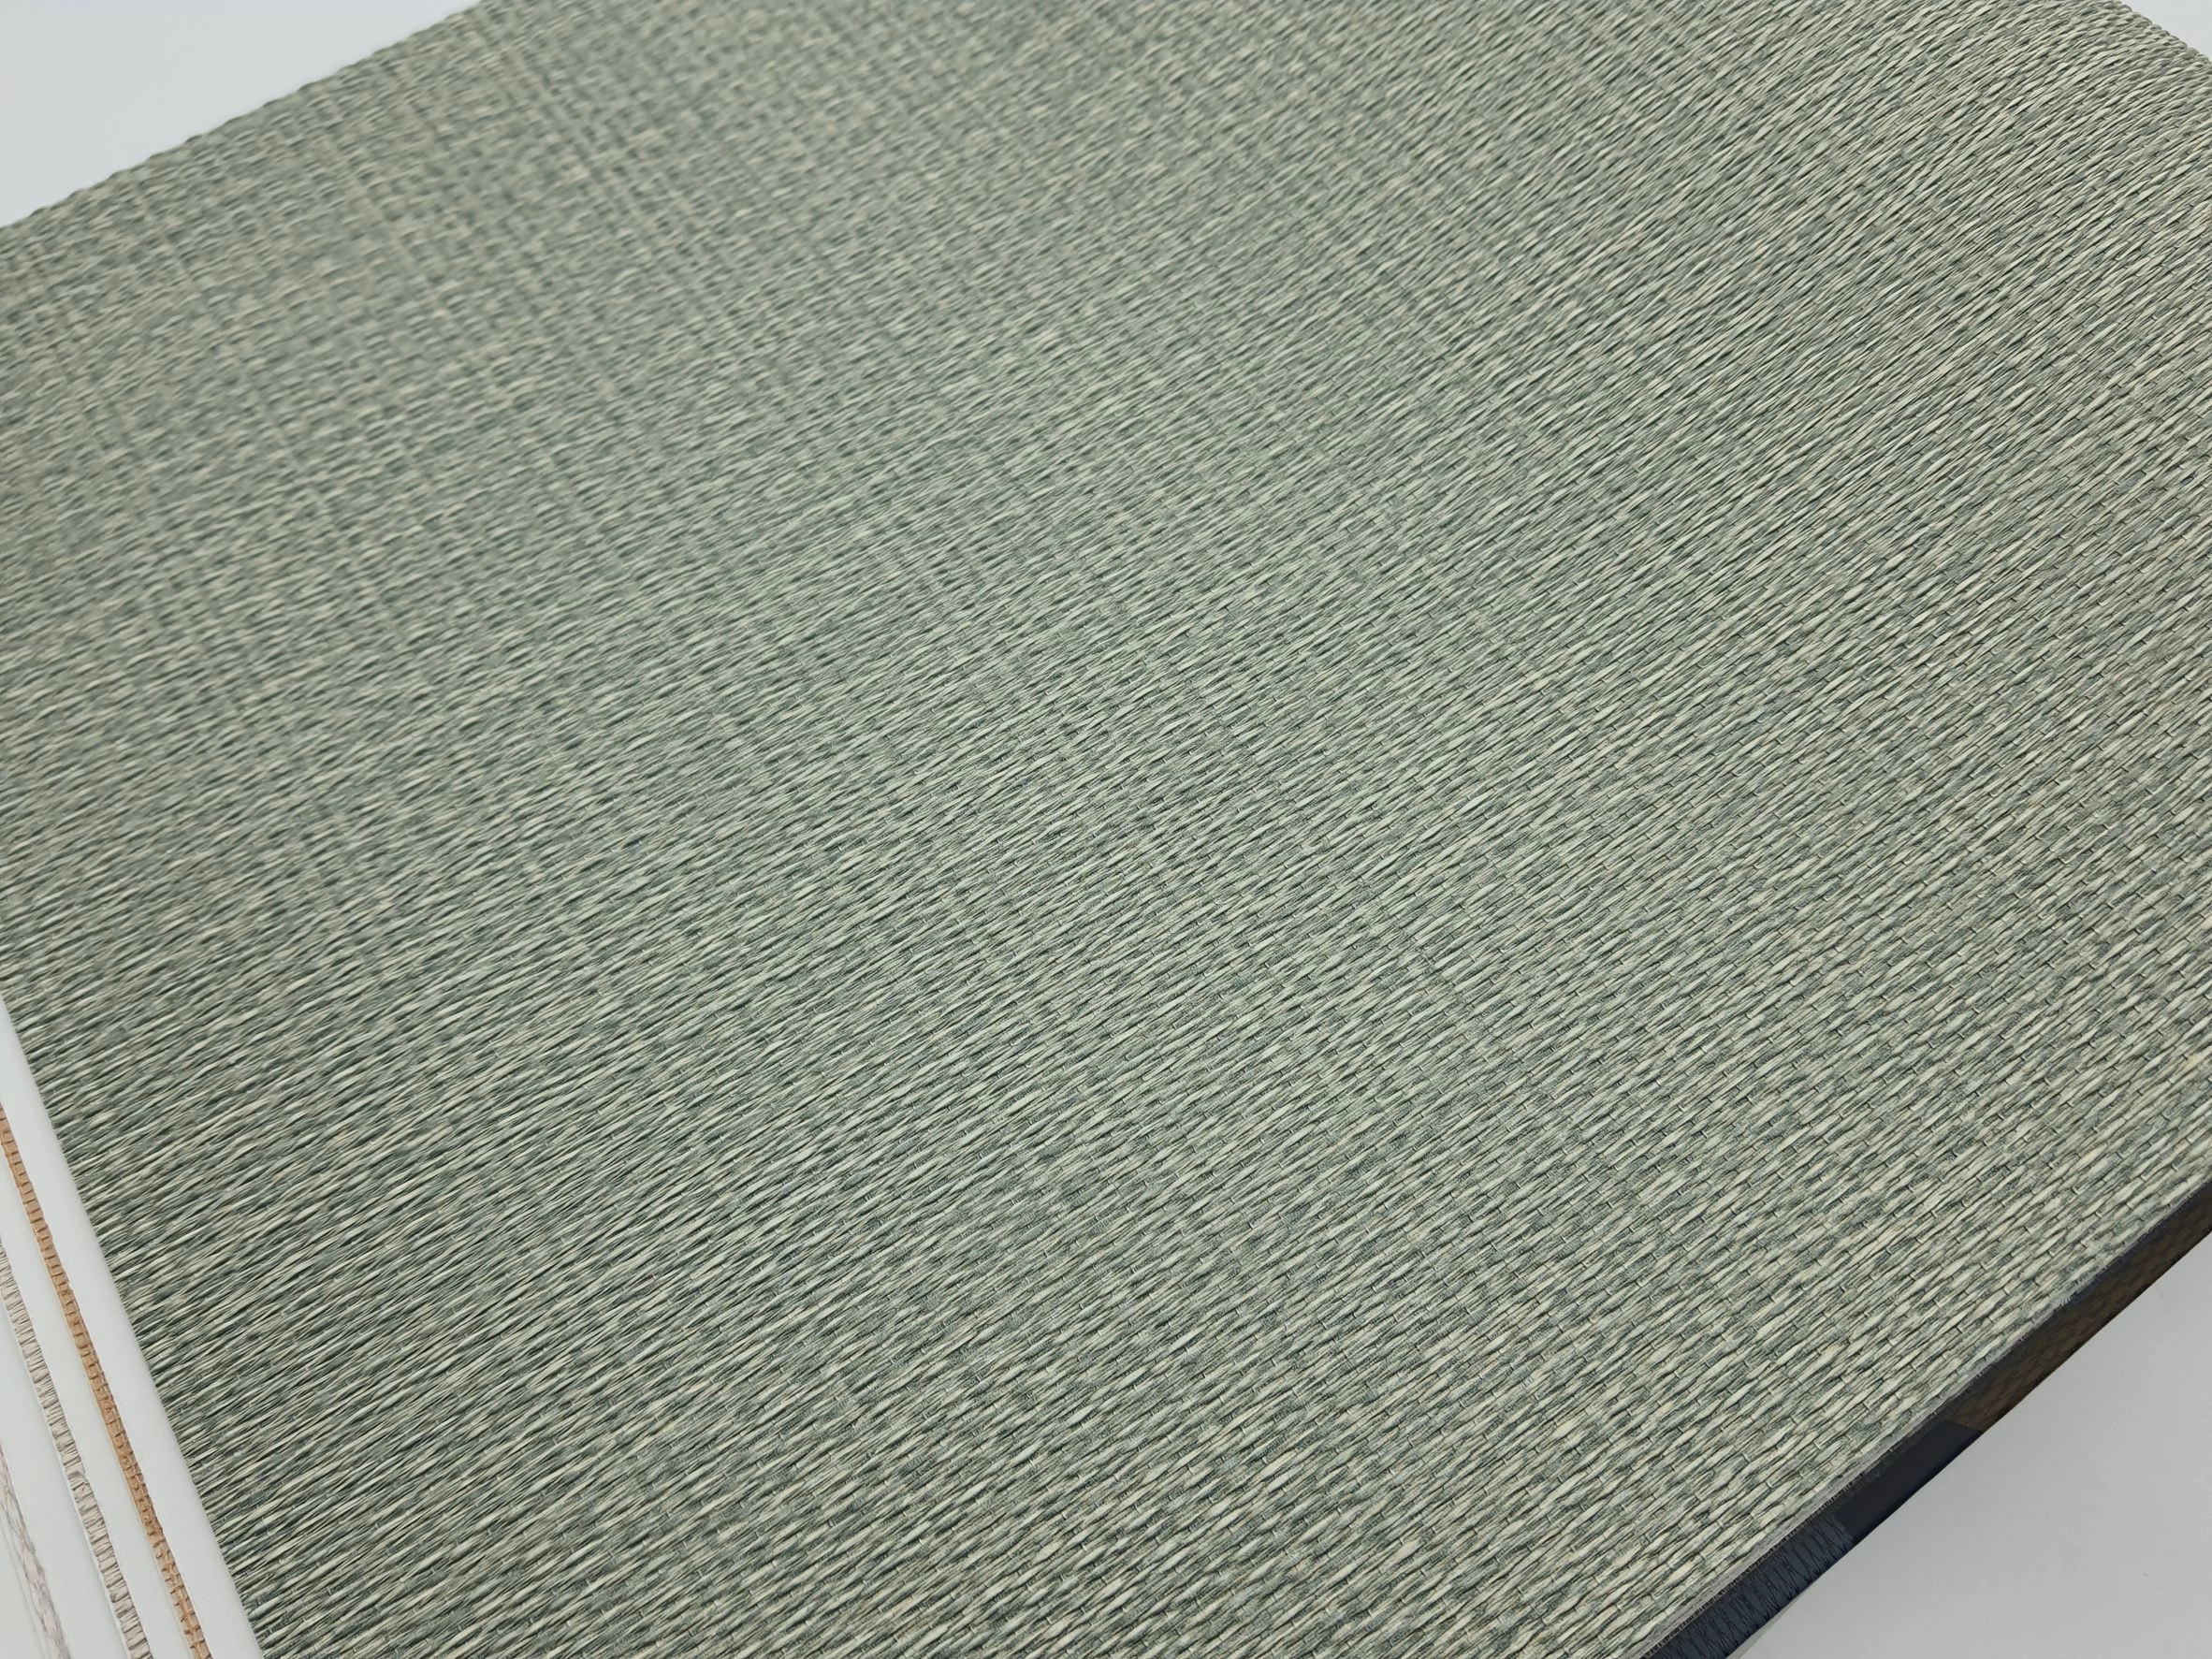 Olasz design tapéta zöld szőtt hatású struktúrált vinyl felülettel